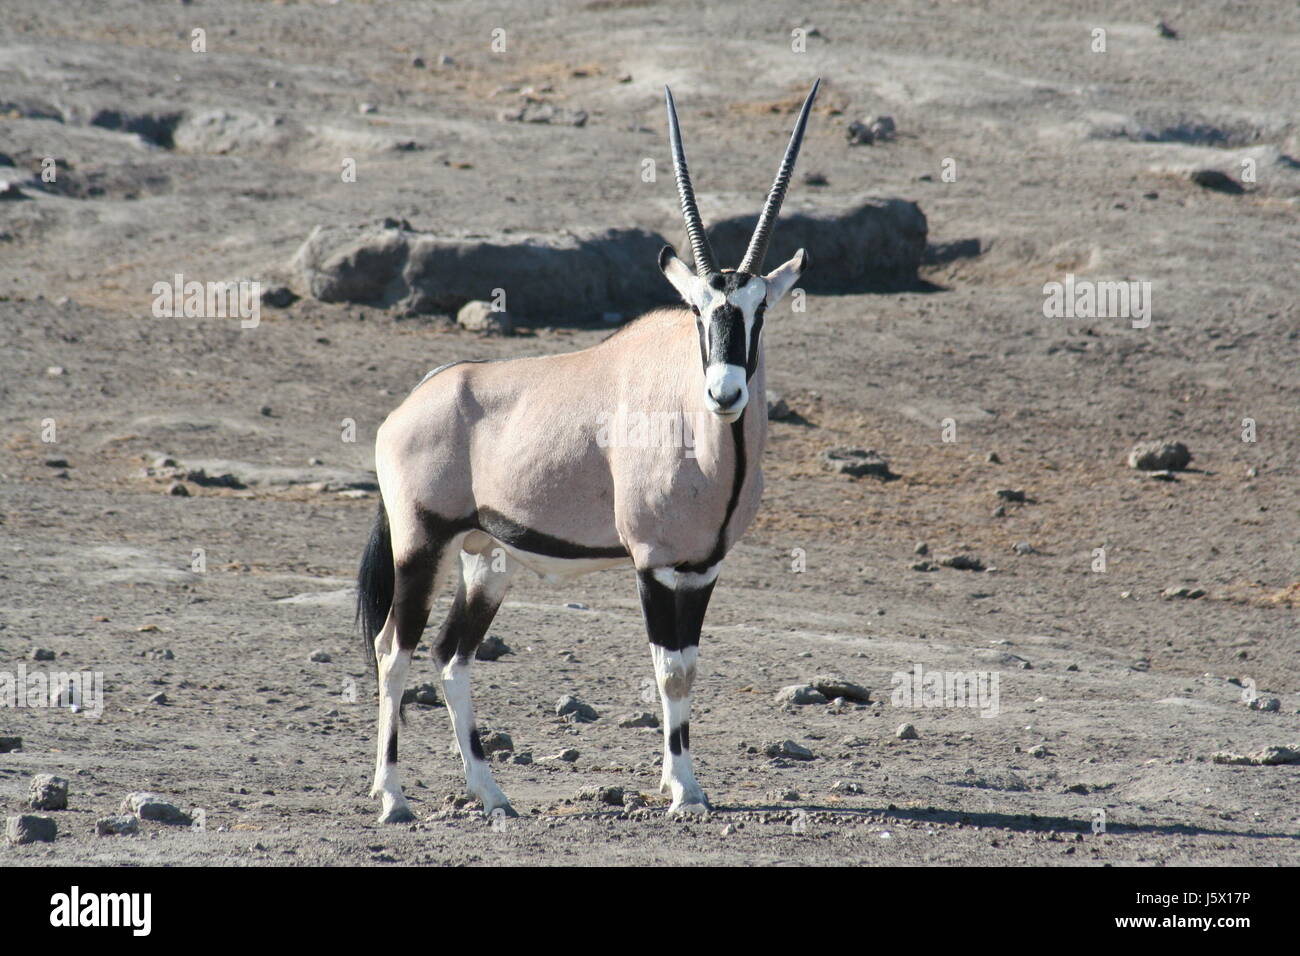 La Namibie La Namibie Afrique Afrique antilope antilope oryx peut-être sugetier masque Banque D'Images